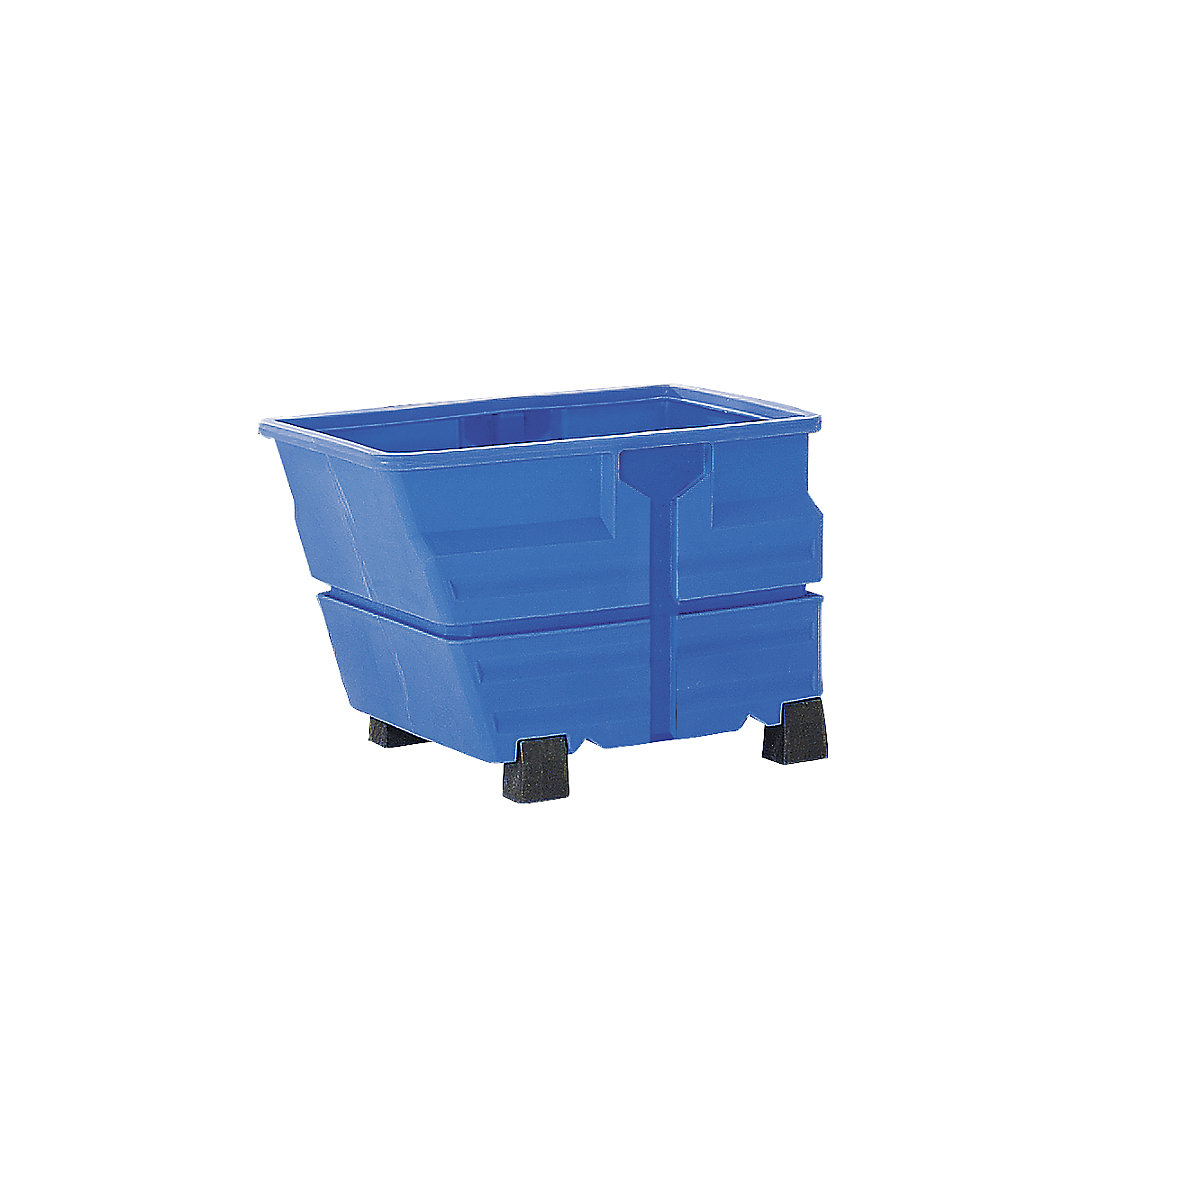 Kippbehälter, PE, ohne Traversenaufhängung, mit Standfüßen, Volumen 0,8 m³, blau-10